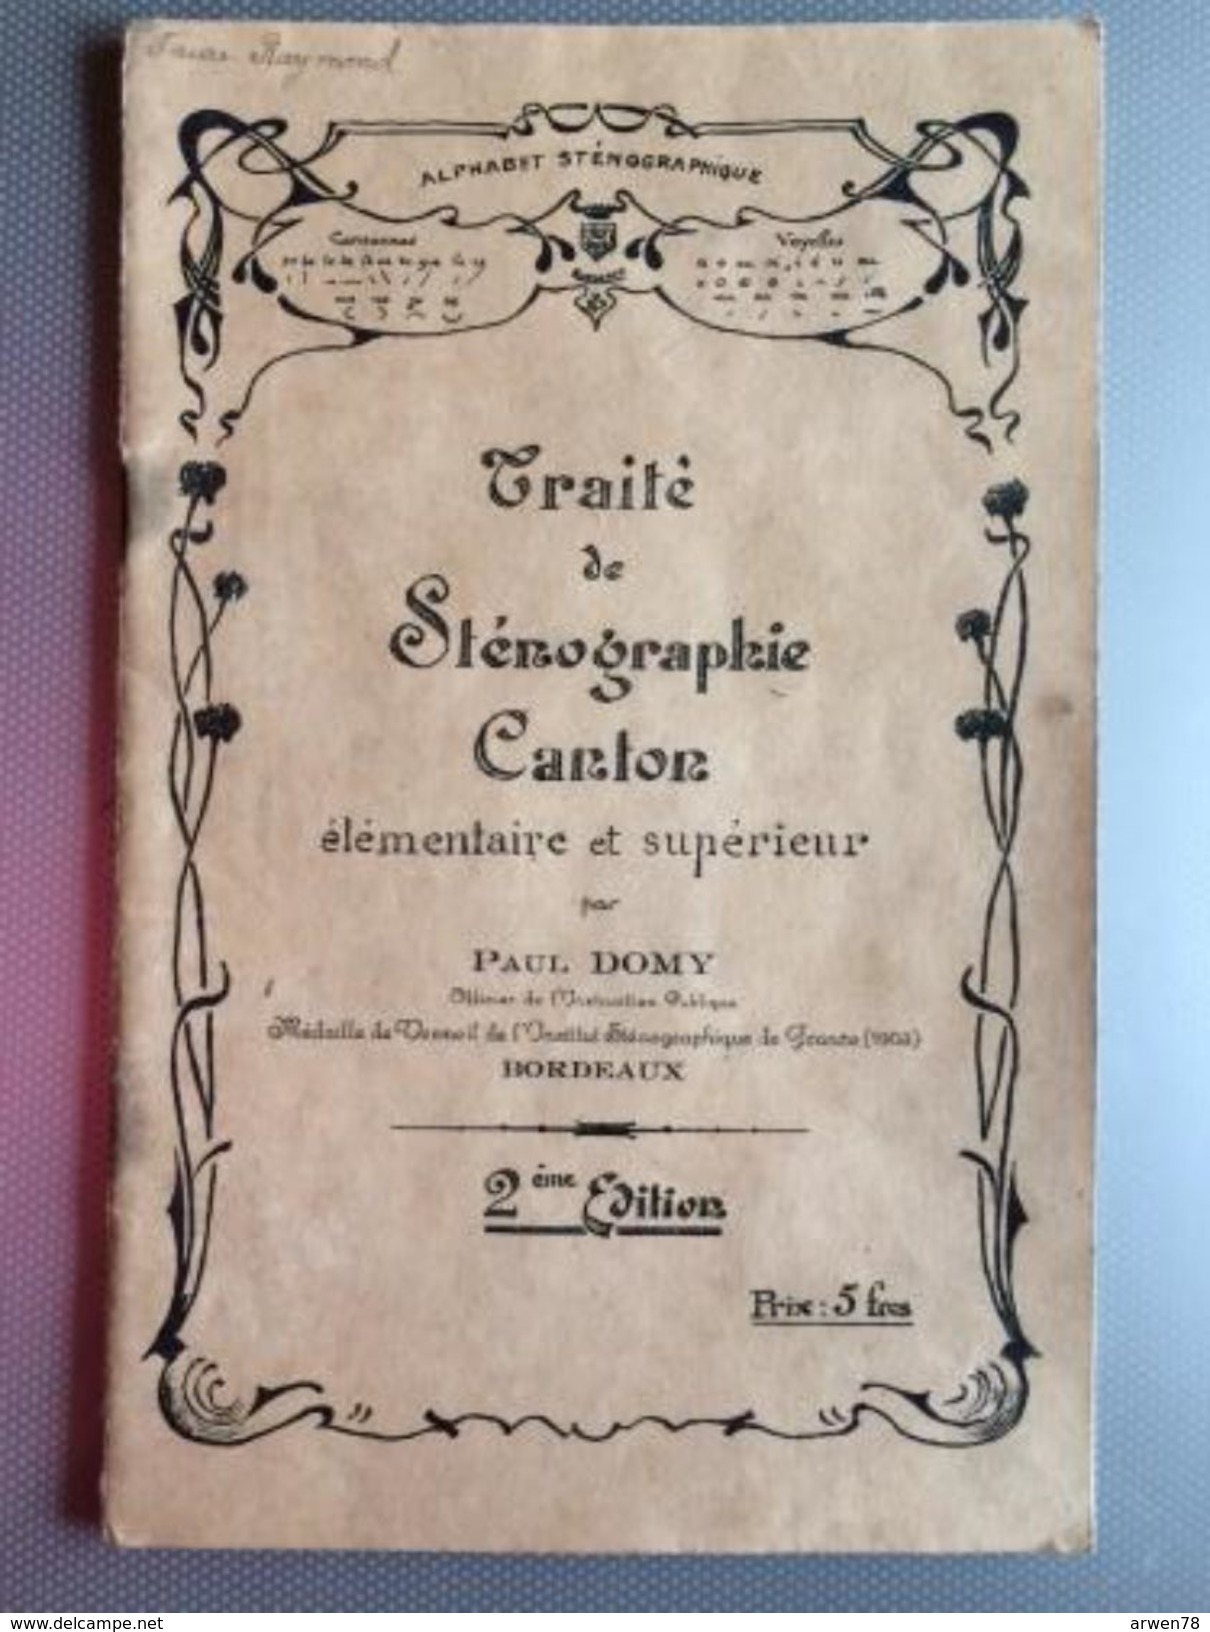 Traite De Stenographie Canton Par Paul Domy - Über 18